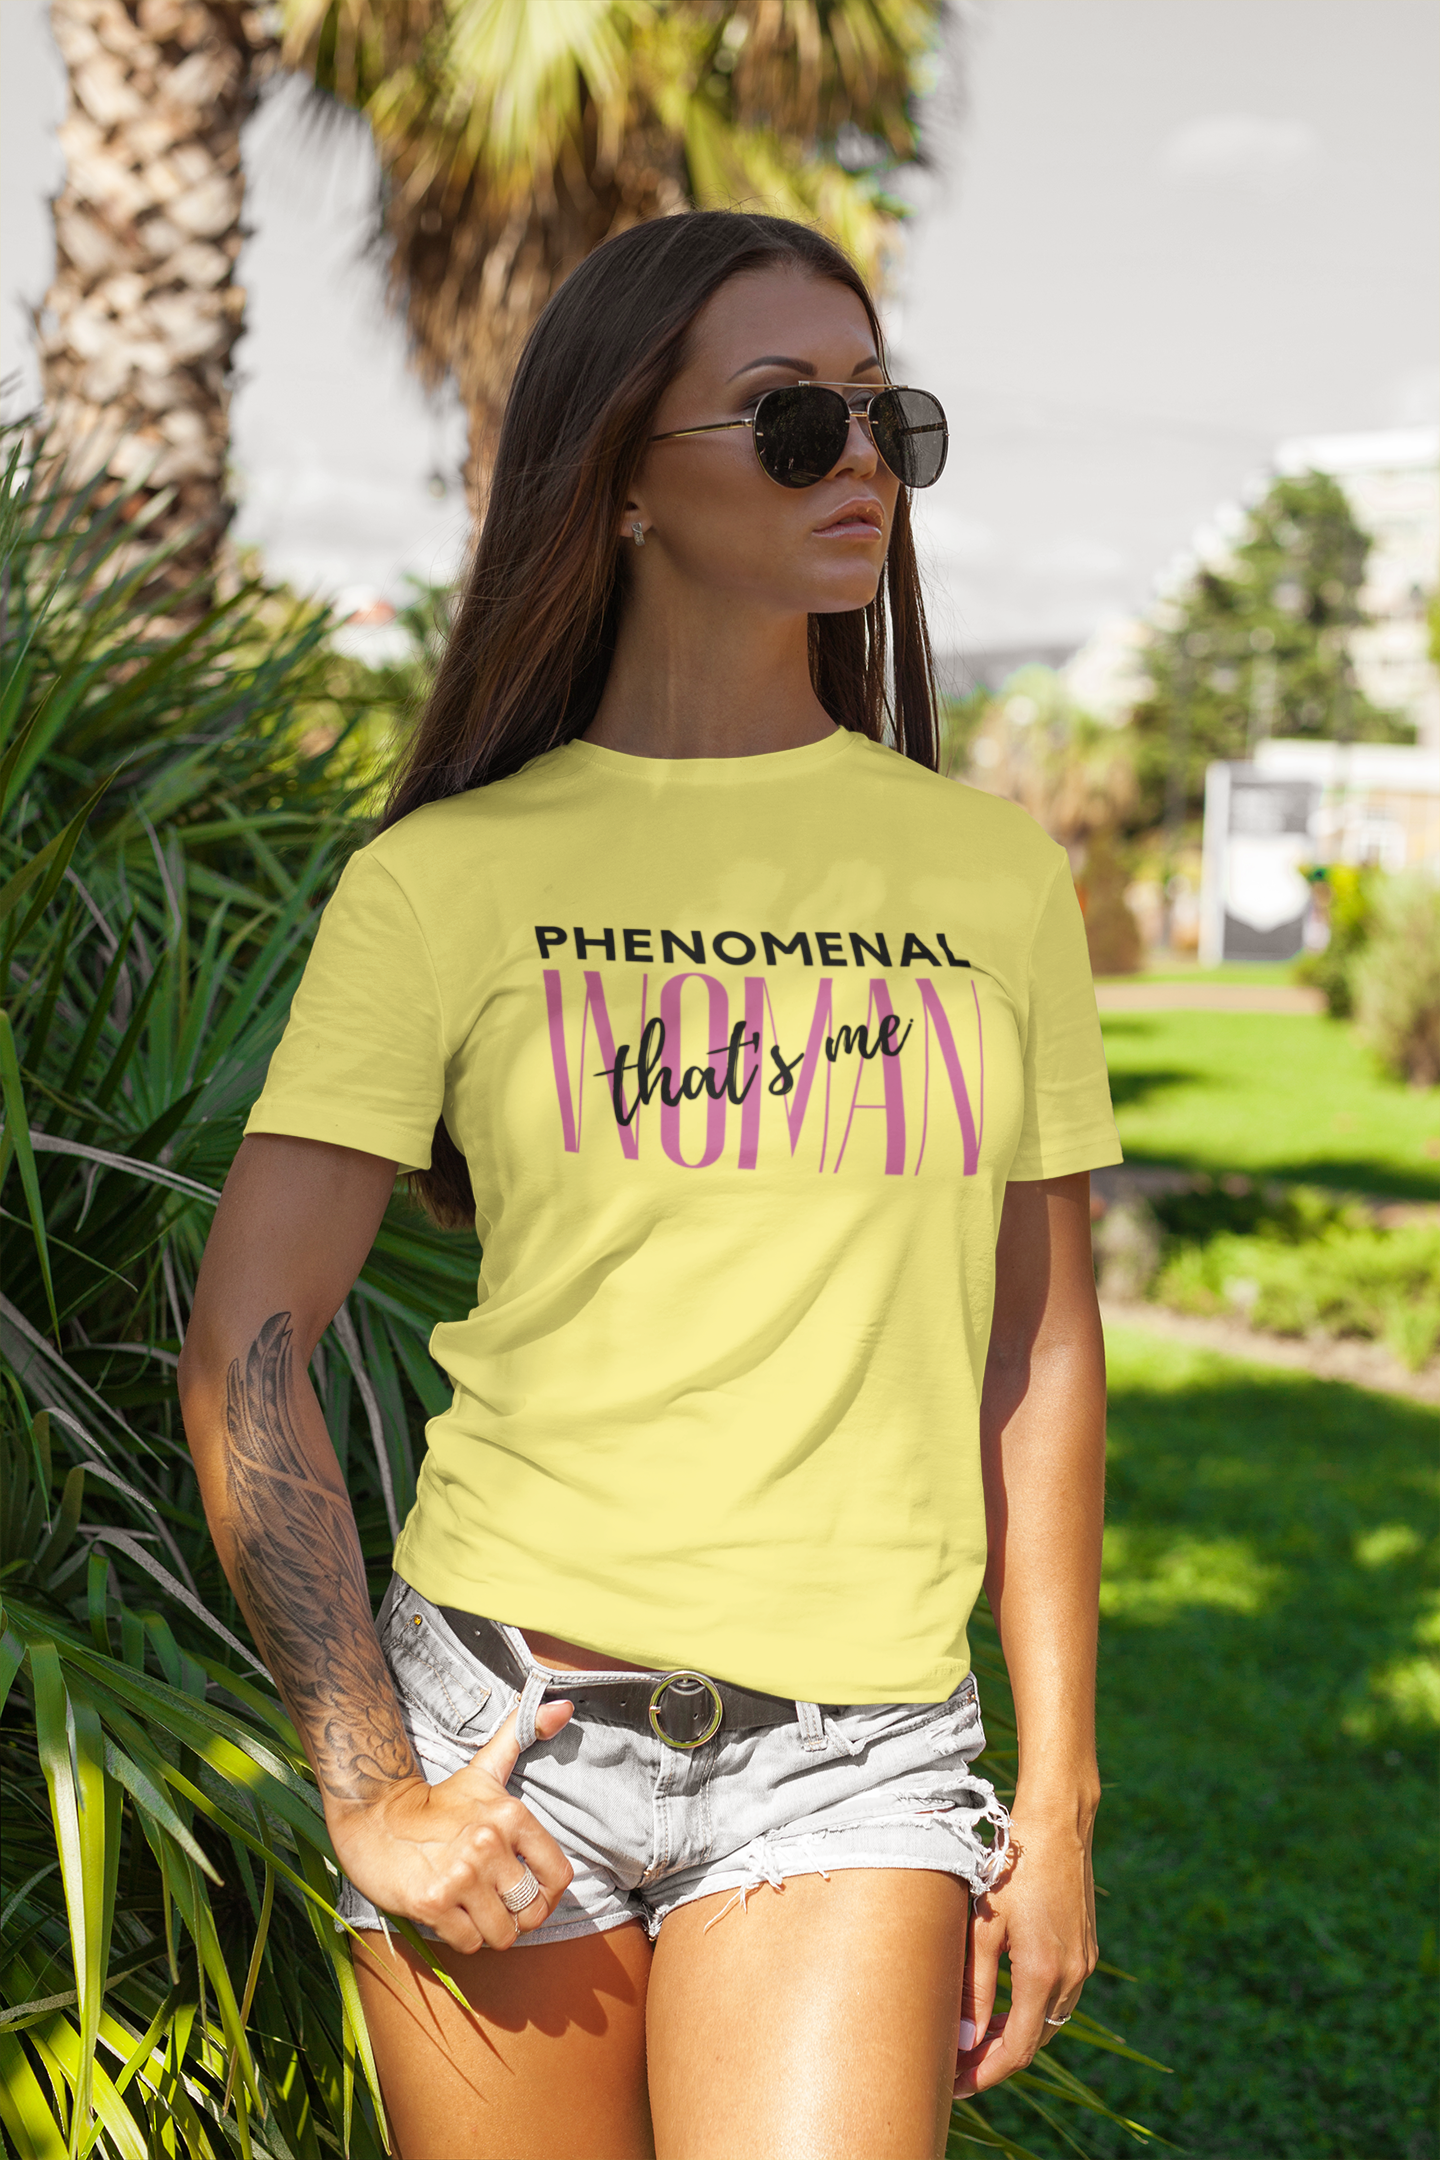 woman empowerment shirt